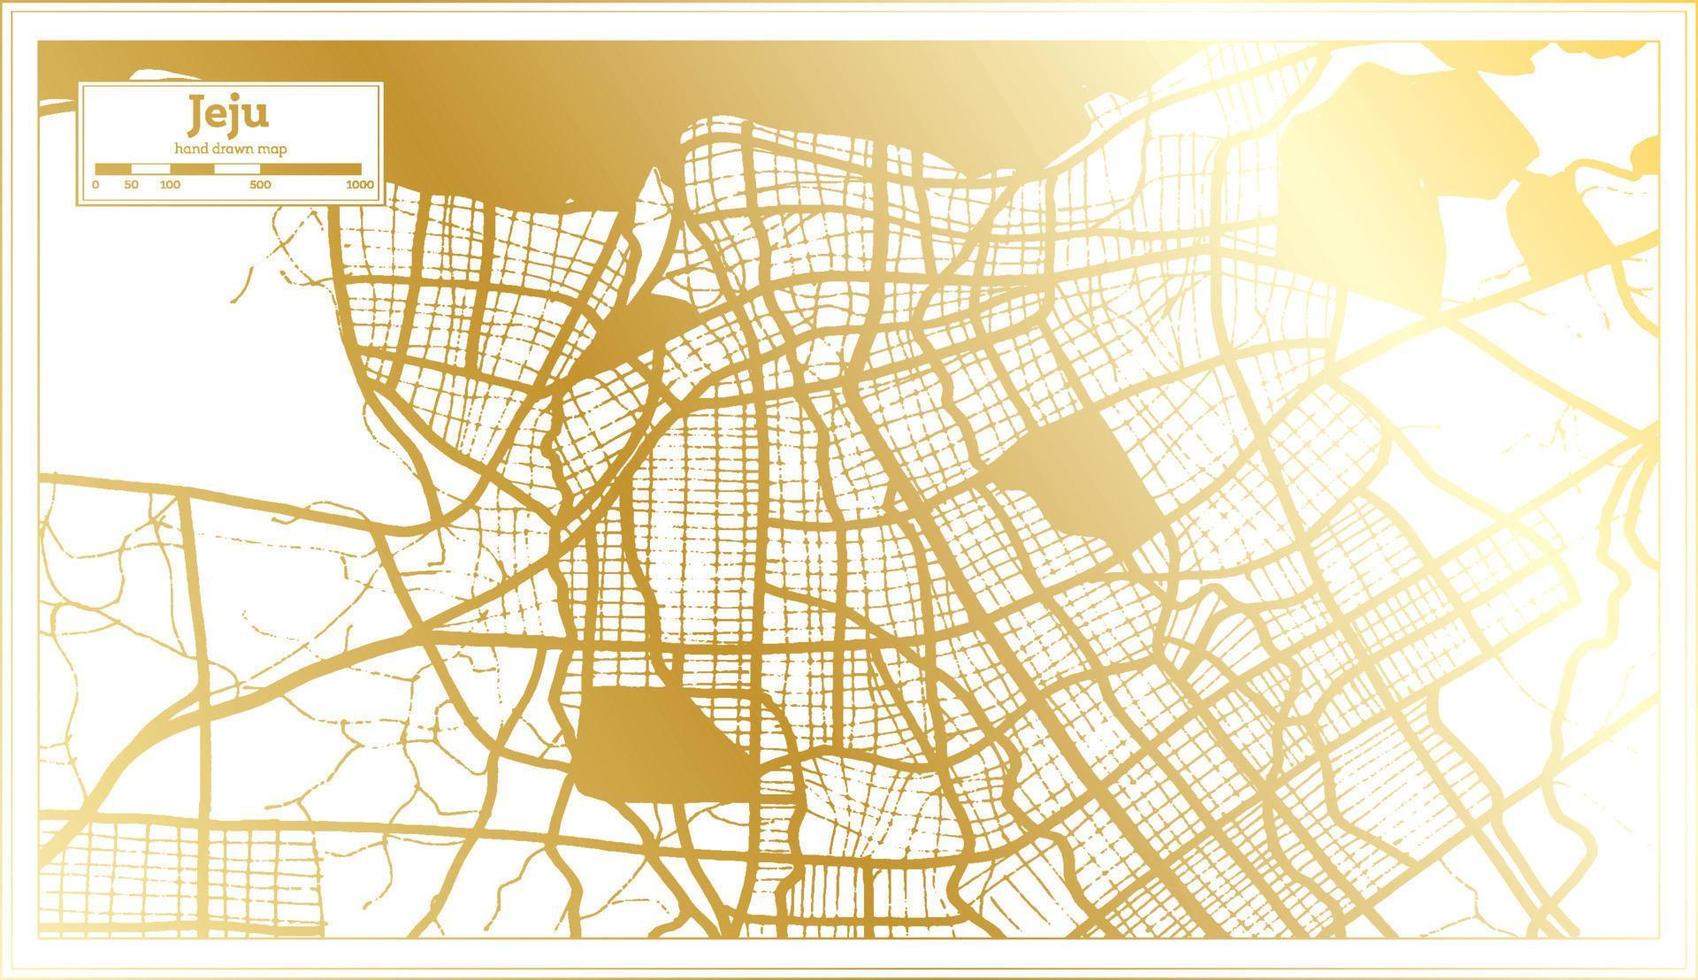 mapa de la ciudad de jeju corea del sur en estilo retro en color dorado. esquema del mapa. vector